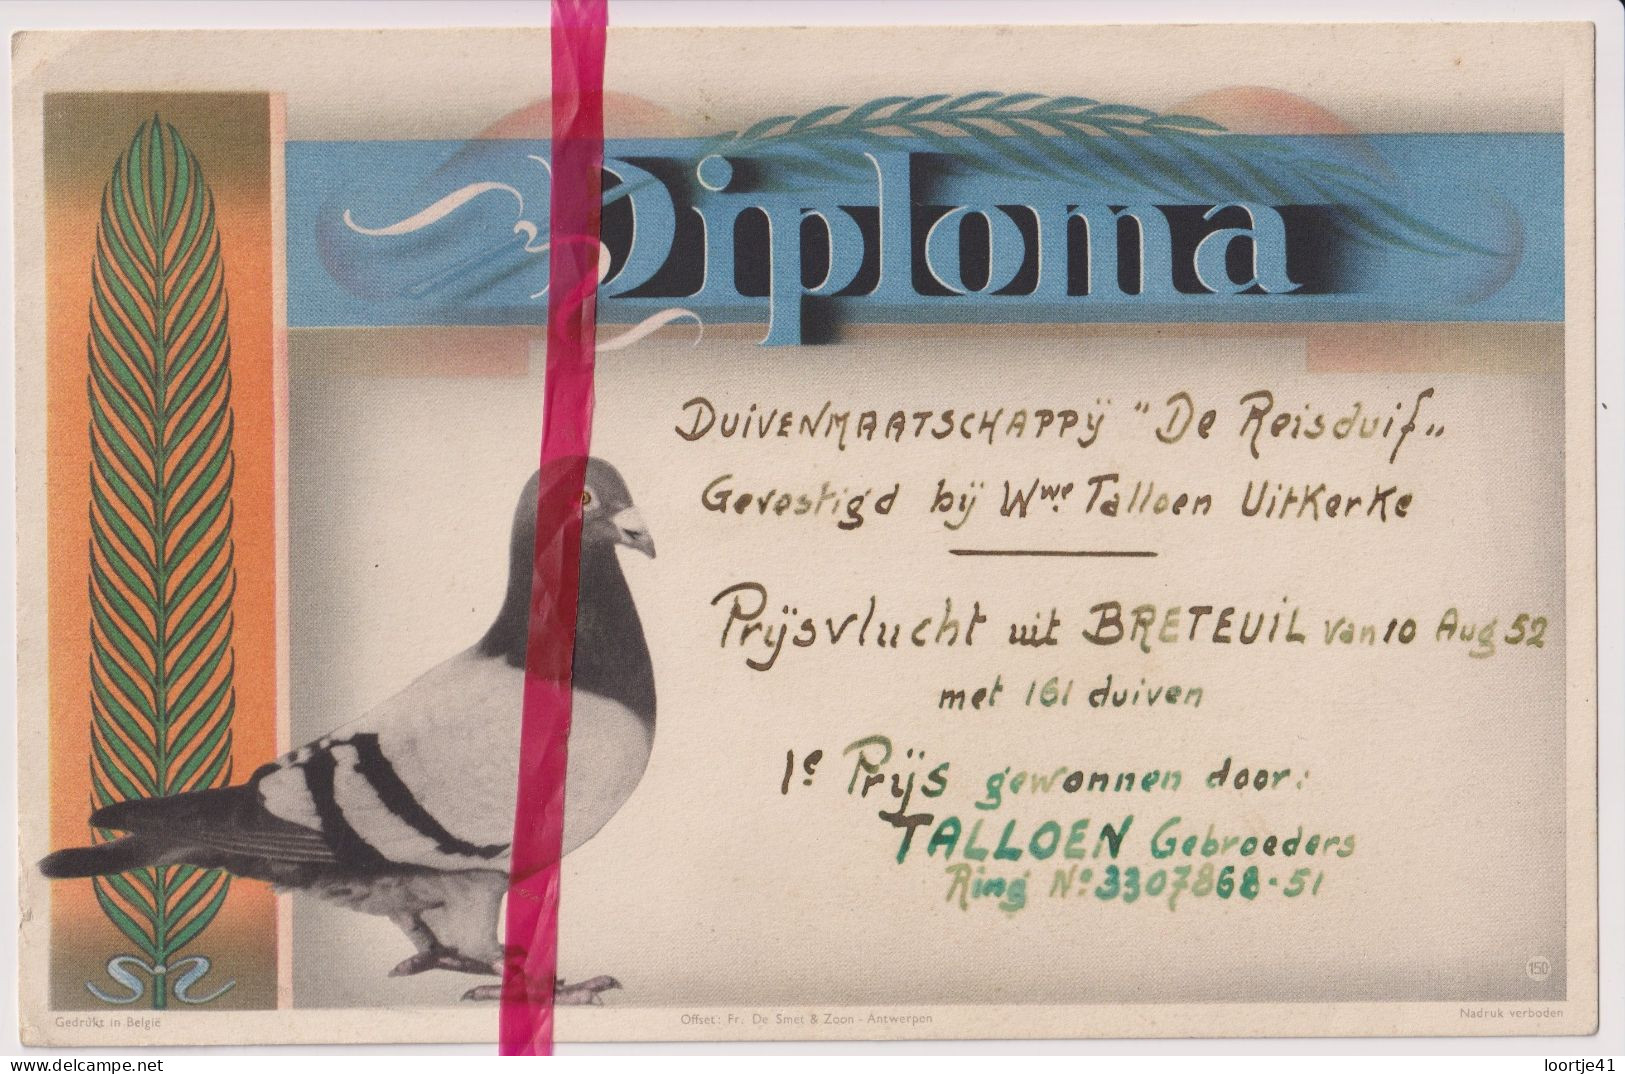 Diploma Duiven 1° Prijs Talloen Gebrs - Uitkerke 1952 - Maatschappij De Reisduif - Diplome Und Schulzeugnisse